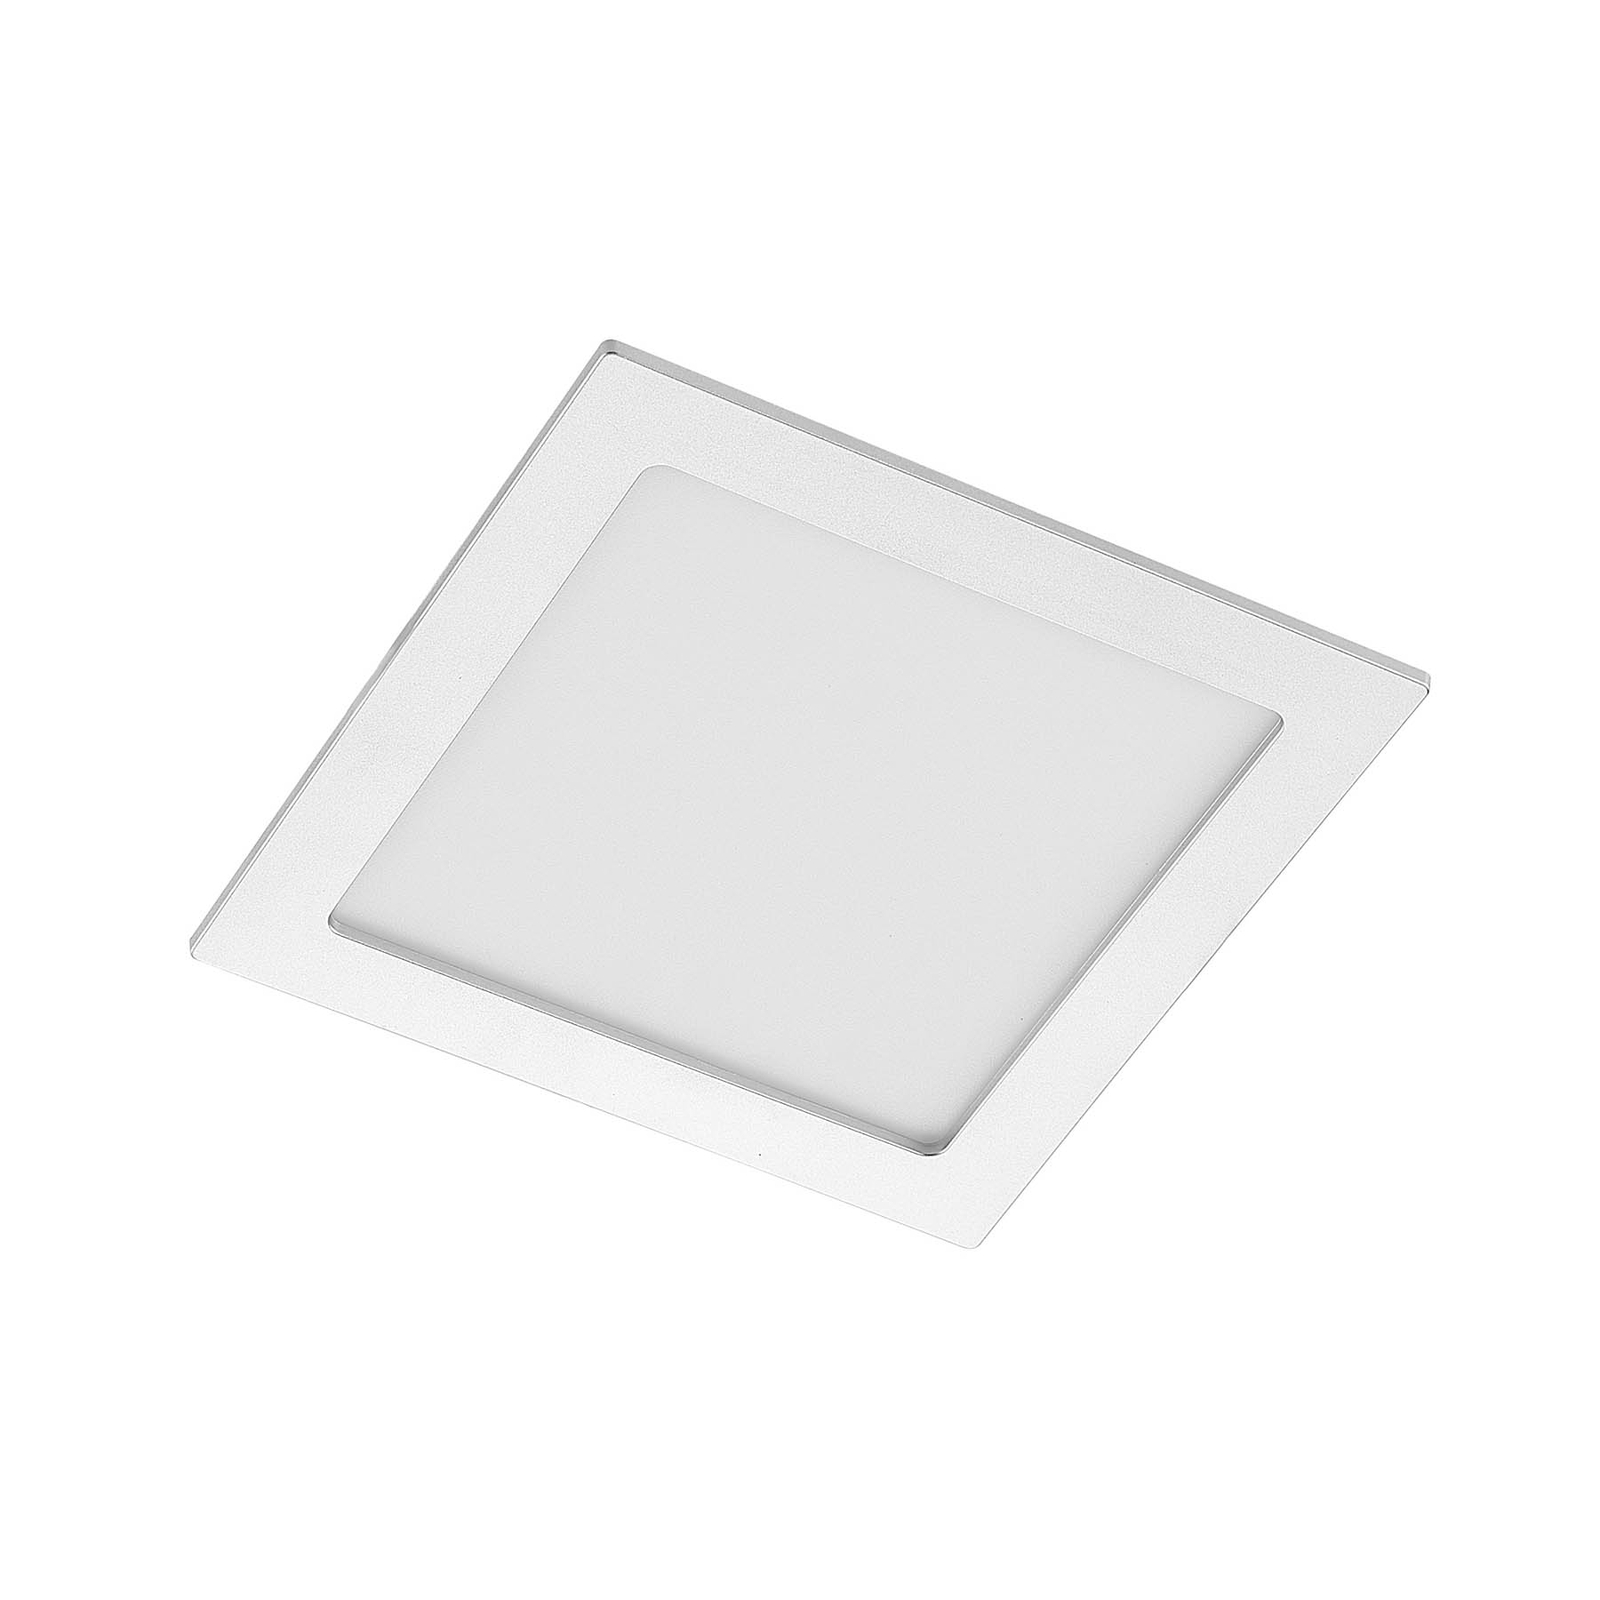 Prios Helina empotrada LED, plata, 22 cm, 18 W